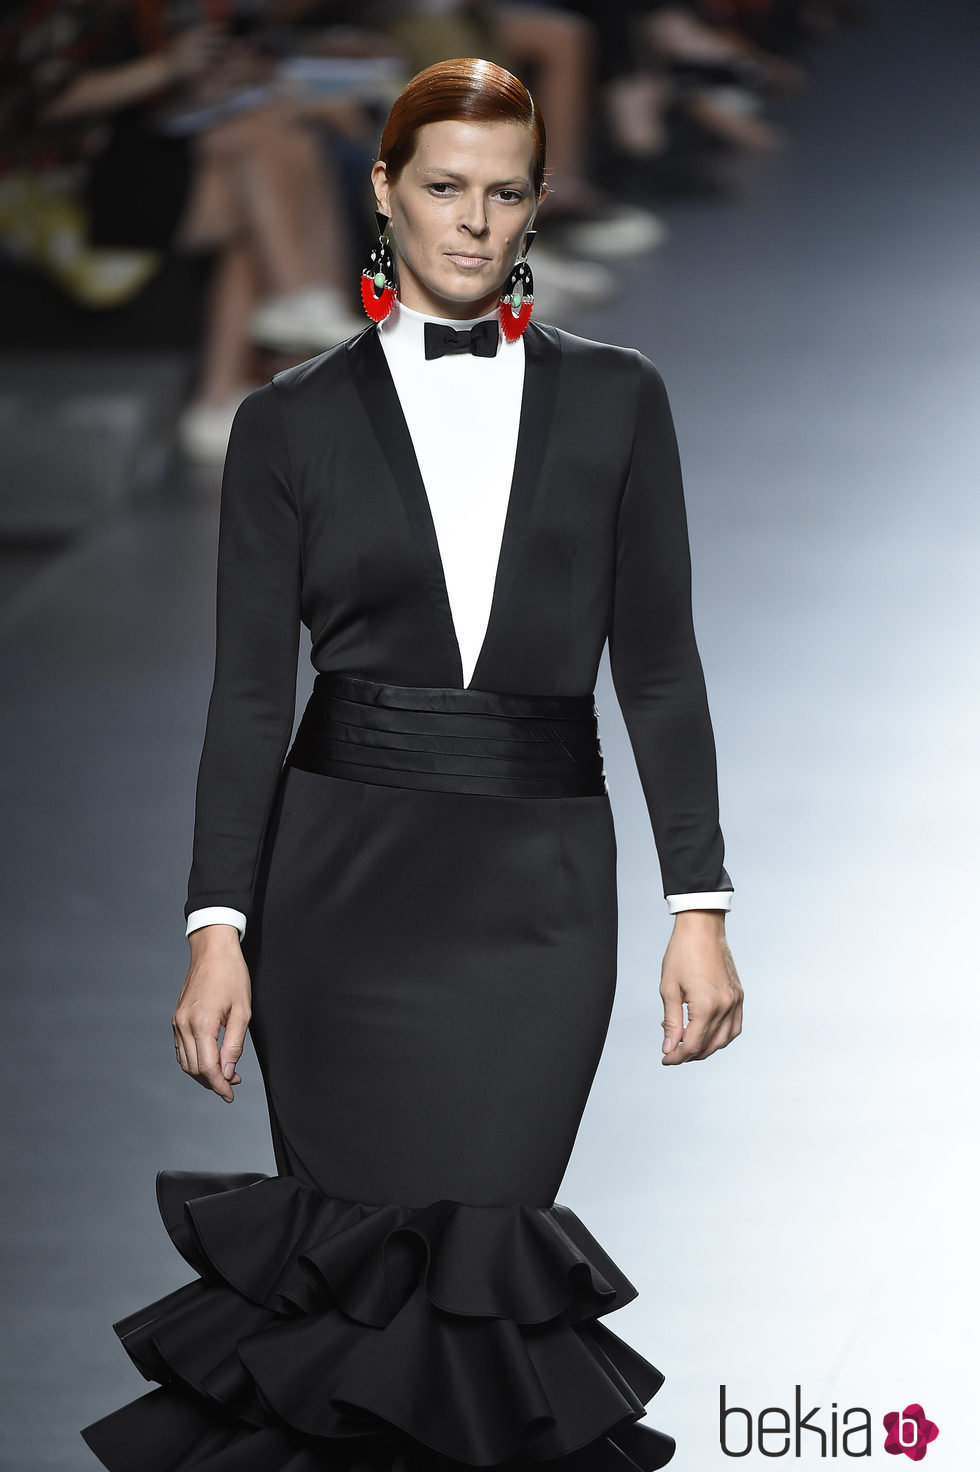 Vestido negro con esmoquin de la colección de primavera/verano 2016 de David Delfín en Madrid Fashion Week